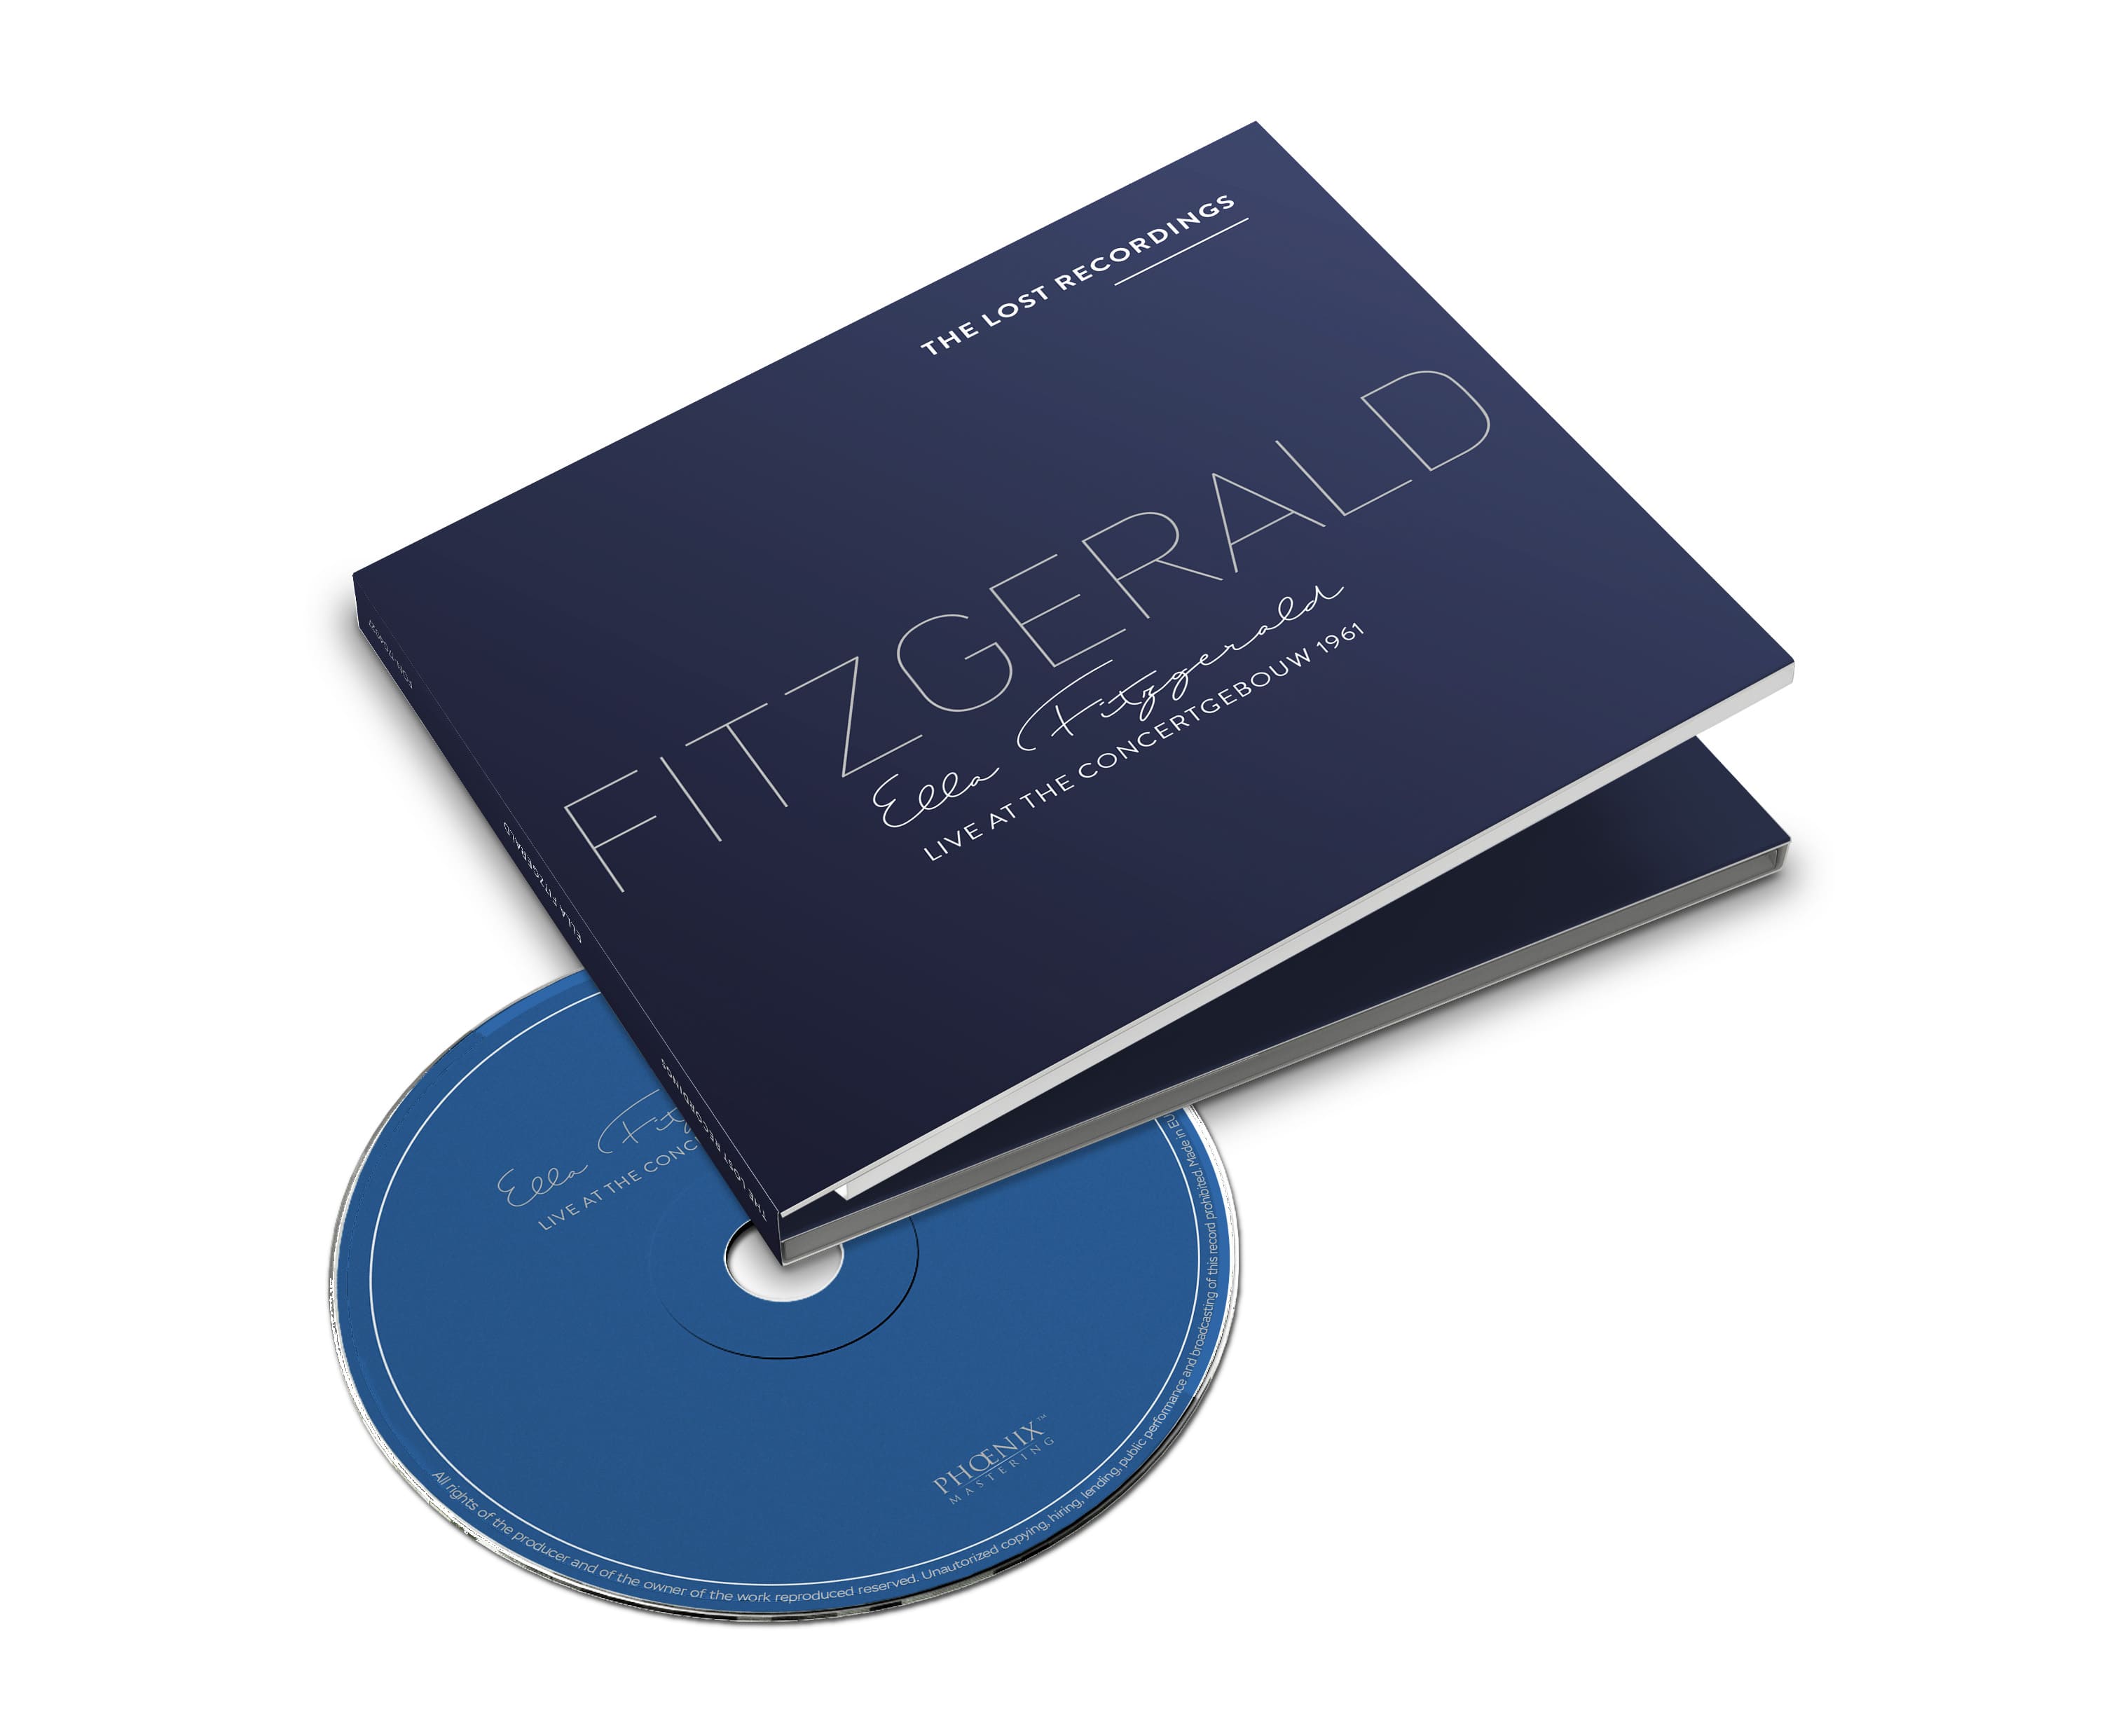 Ella Fitzgerald - Live at the Concertgebouw - 1961 - CD 